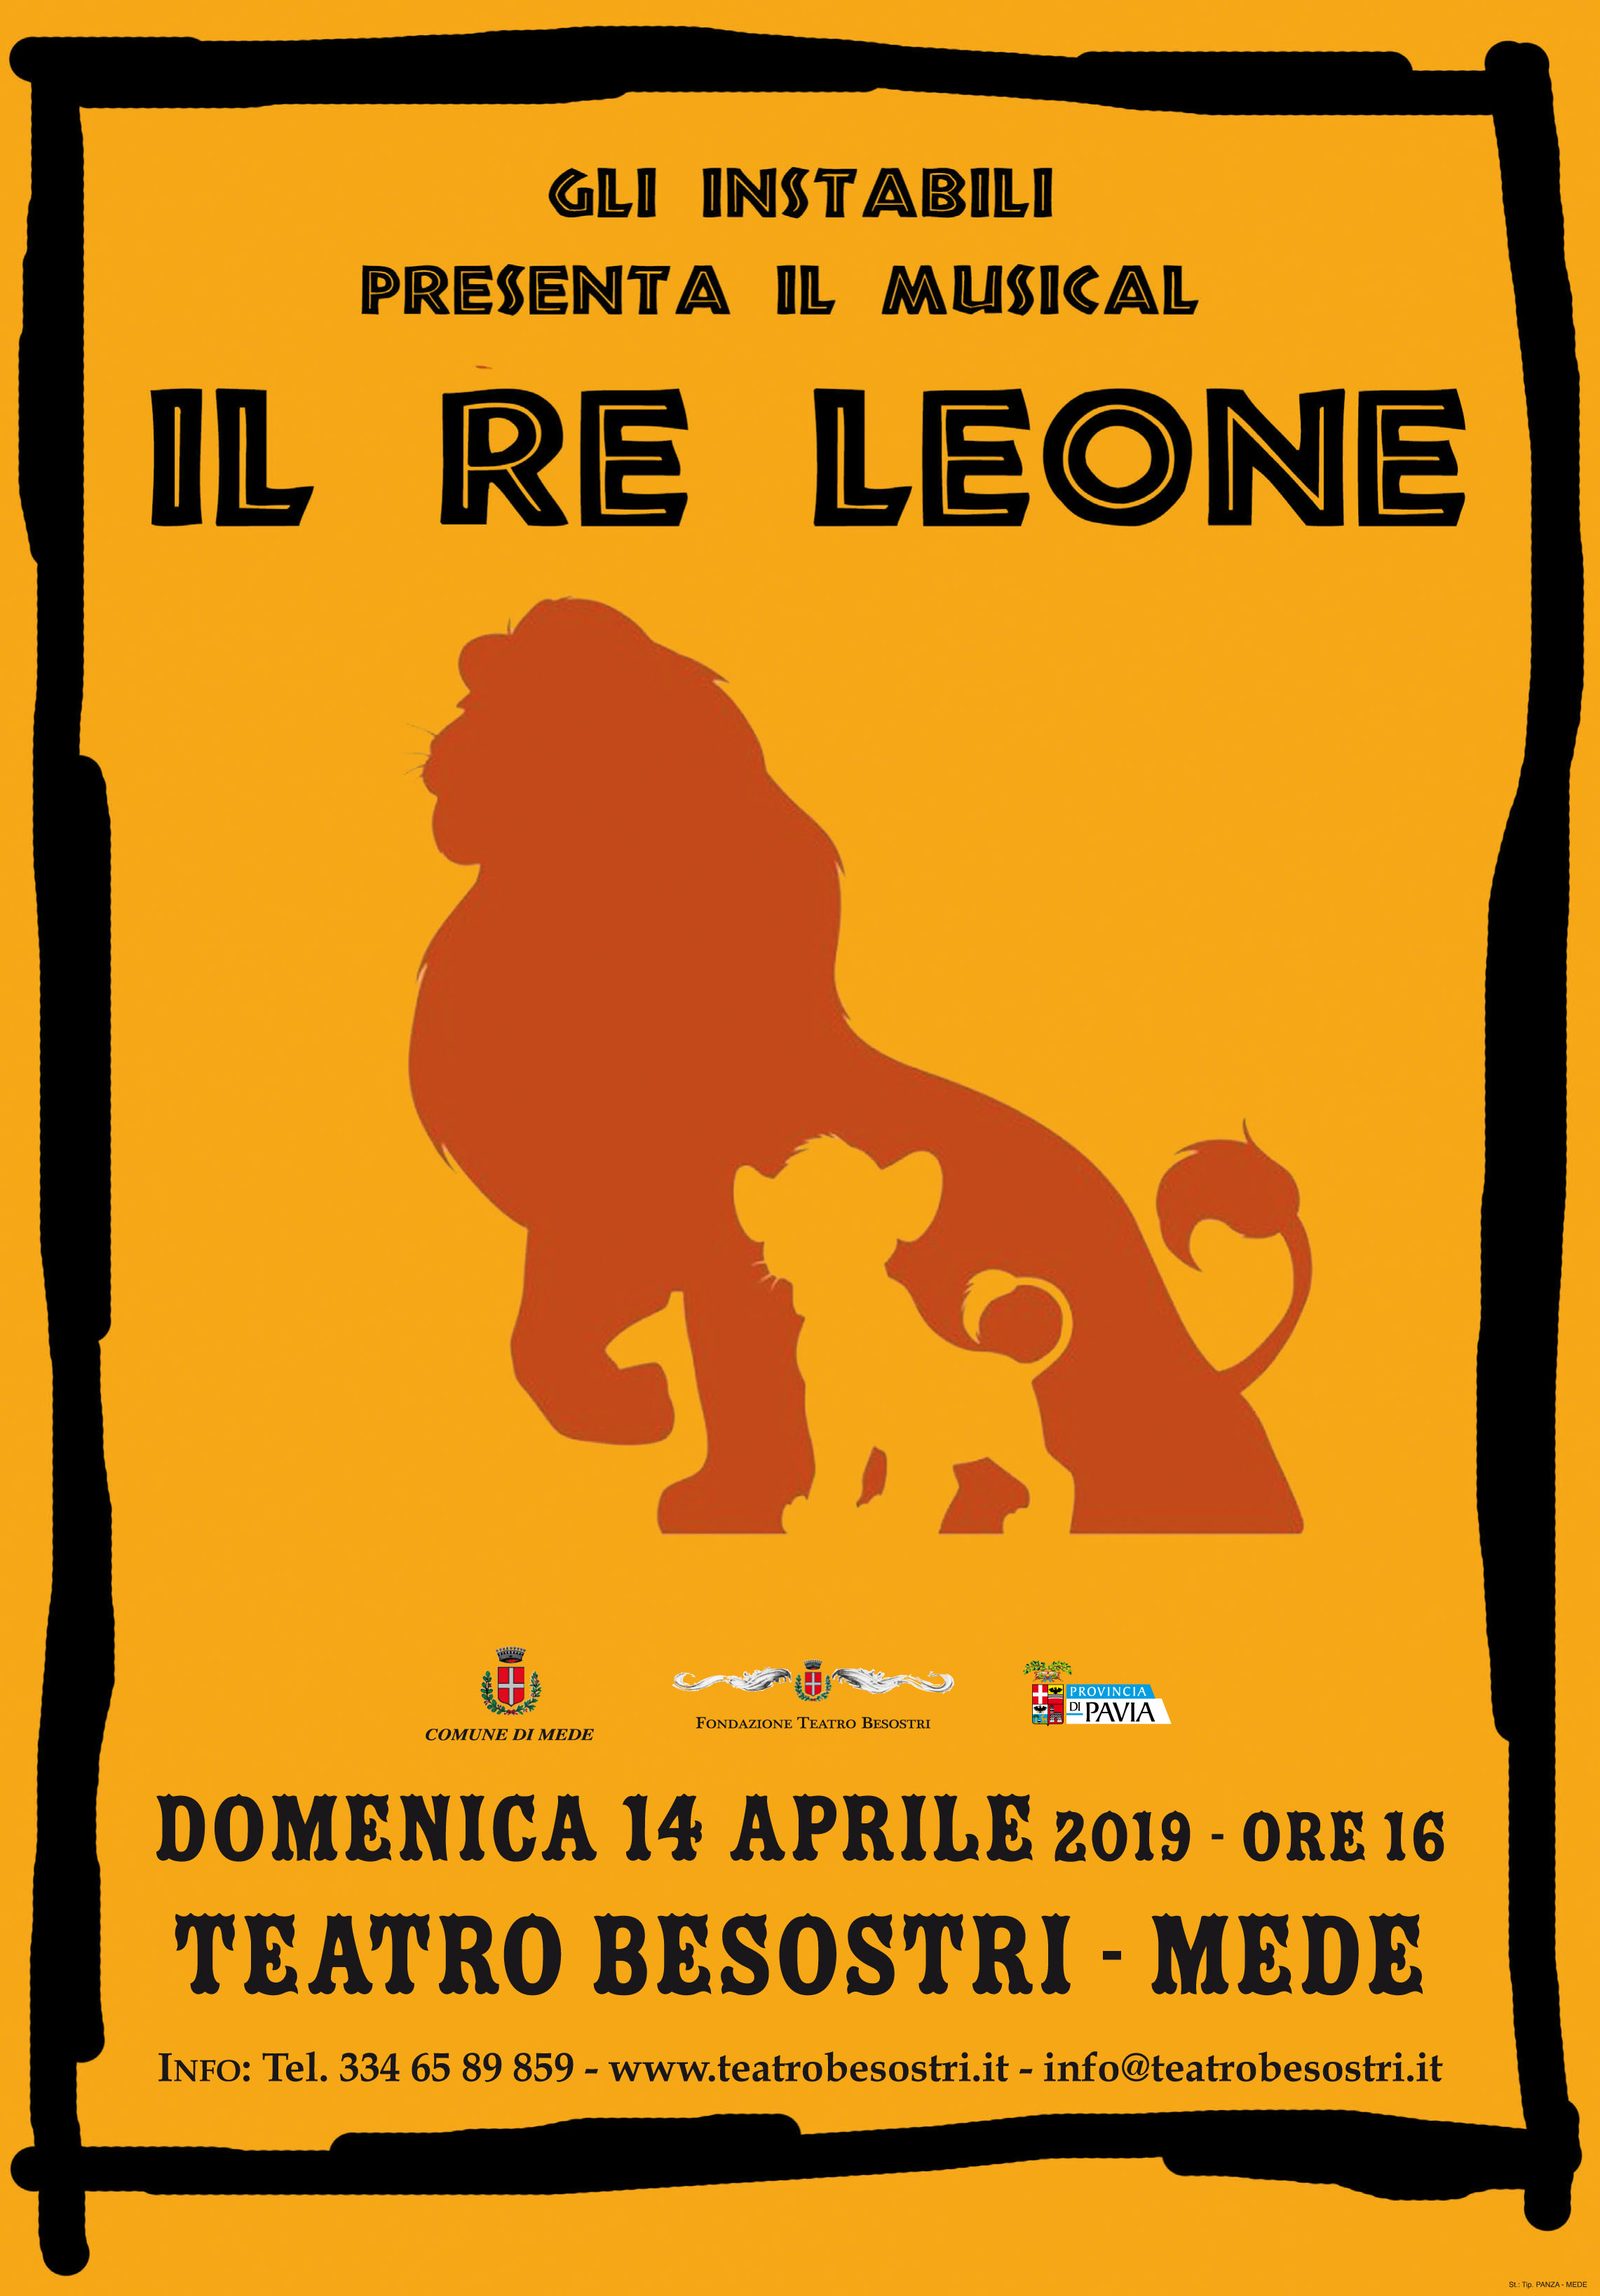 Foto MEDE: al Besostri va in scena il musical del Re Leone